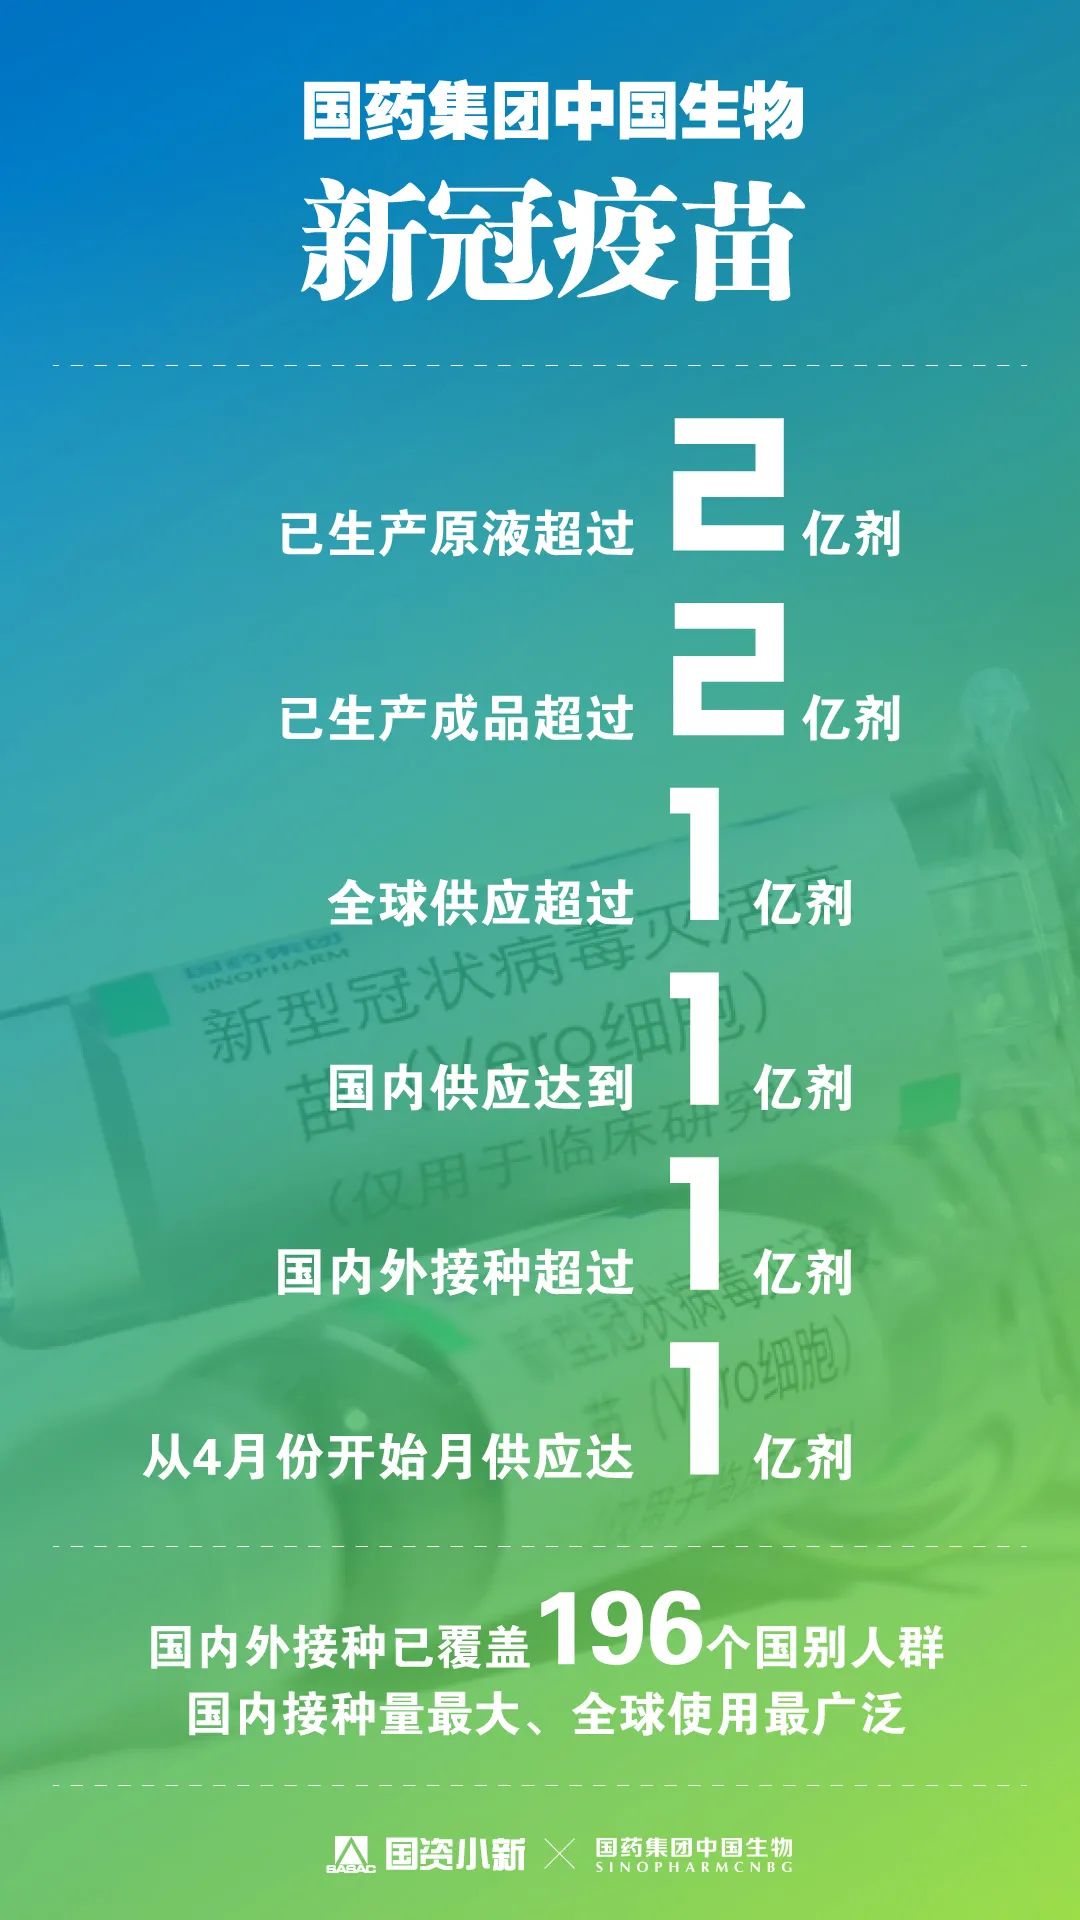 从“疫苗”到“亿苗”,6组数据带你认识了不起的中国疫苗